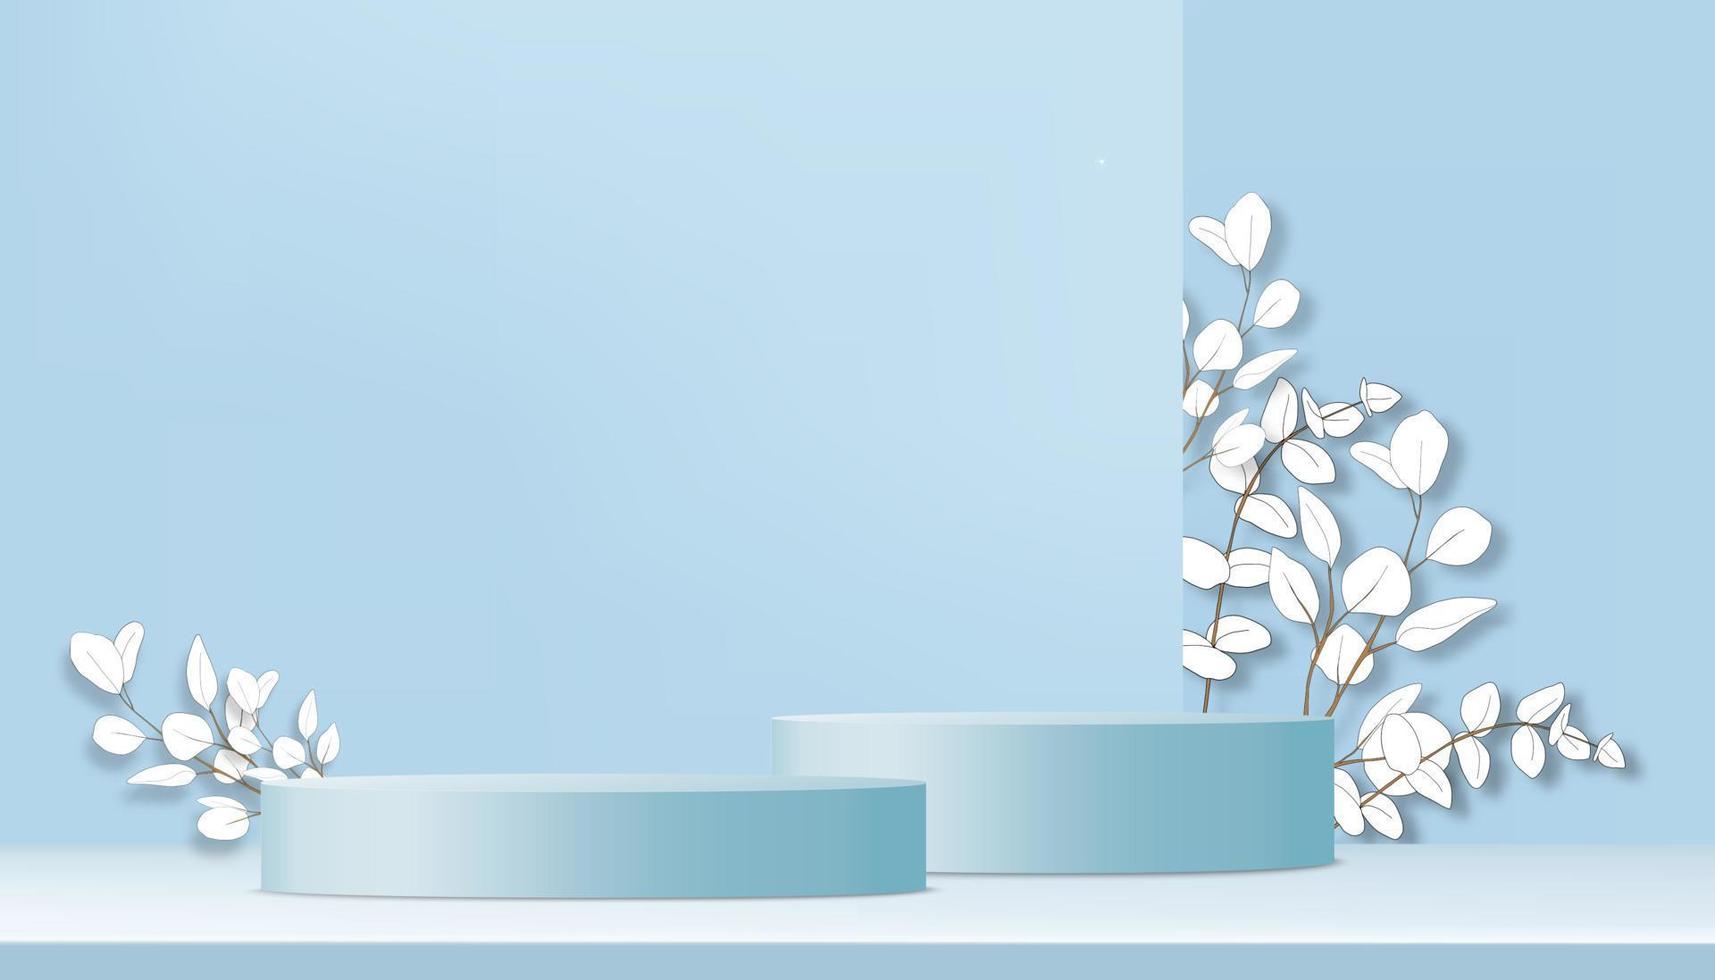 sala studio con podio cilindrico 3d, foglie di eucalipto tagliate su carta su sfondo blu muro, banner di sfondo illustrazione vettoriale per presentazione prodotti, promozione, mockup in saldi primaverili o estivi